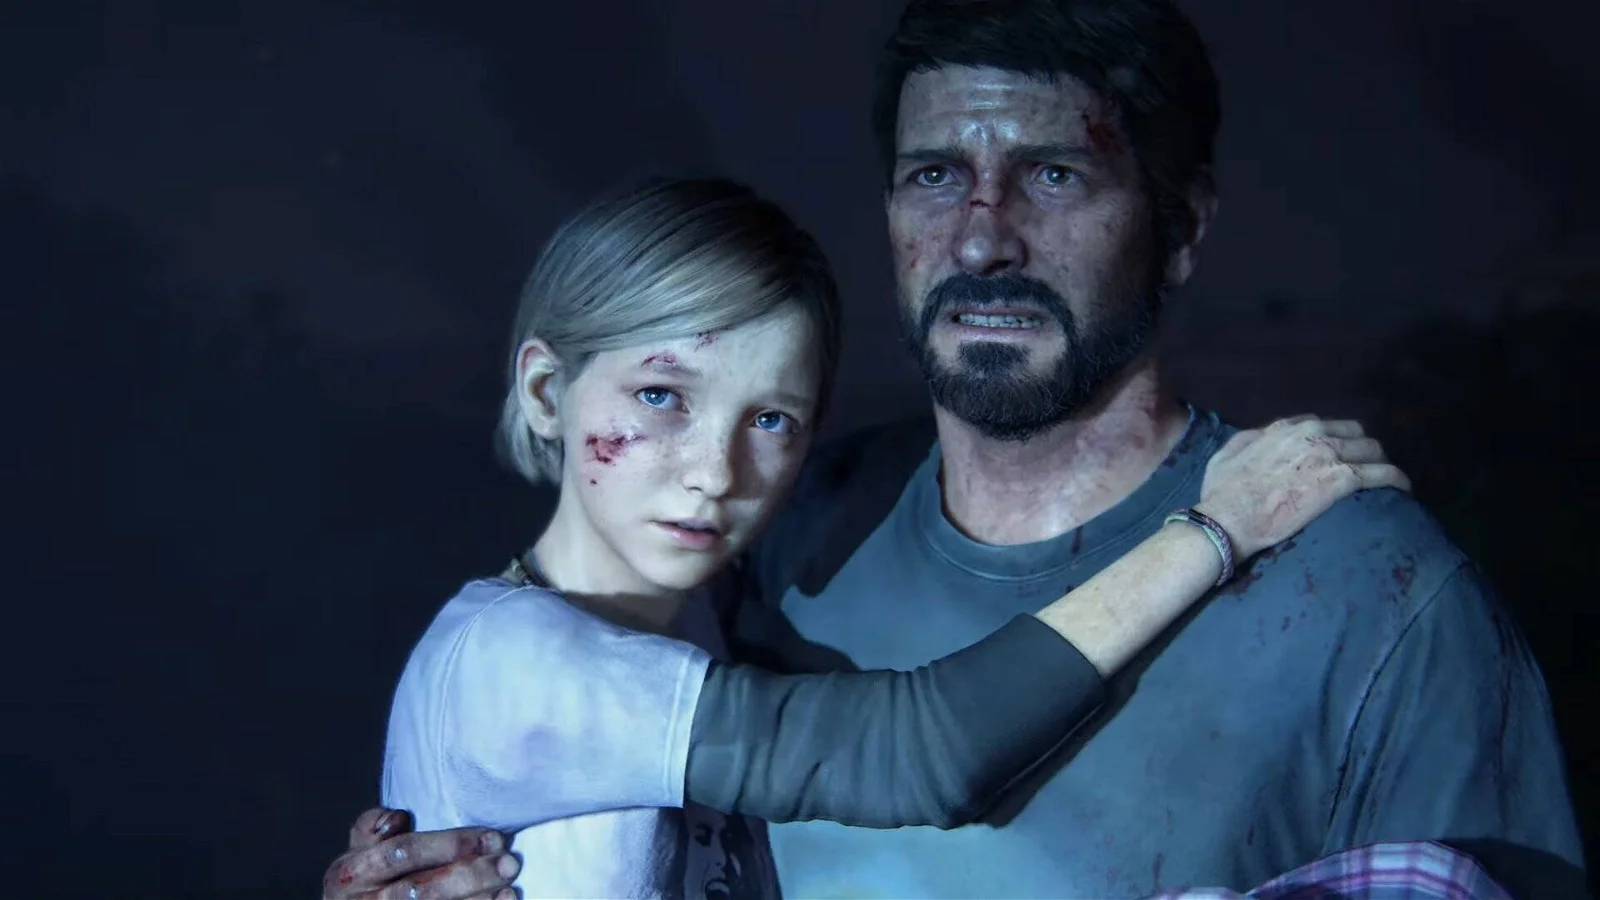 Joel, con sguardo terrorizzato, tiene in braccio sua figlia, leggermente ferita in viso